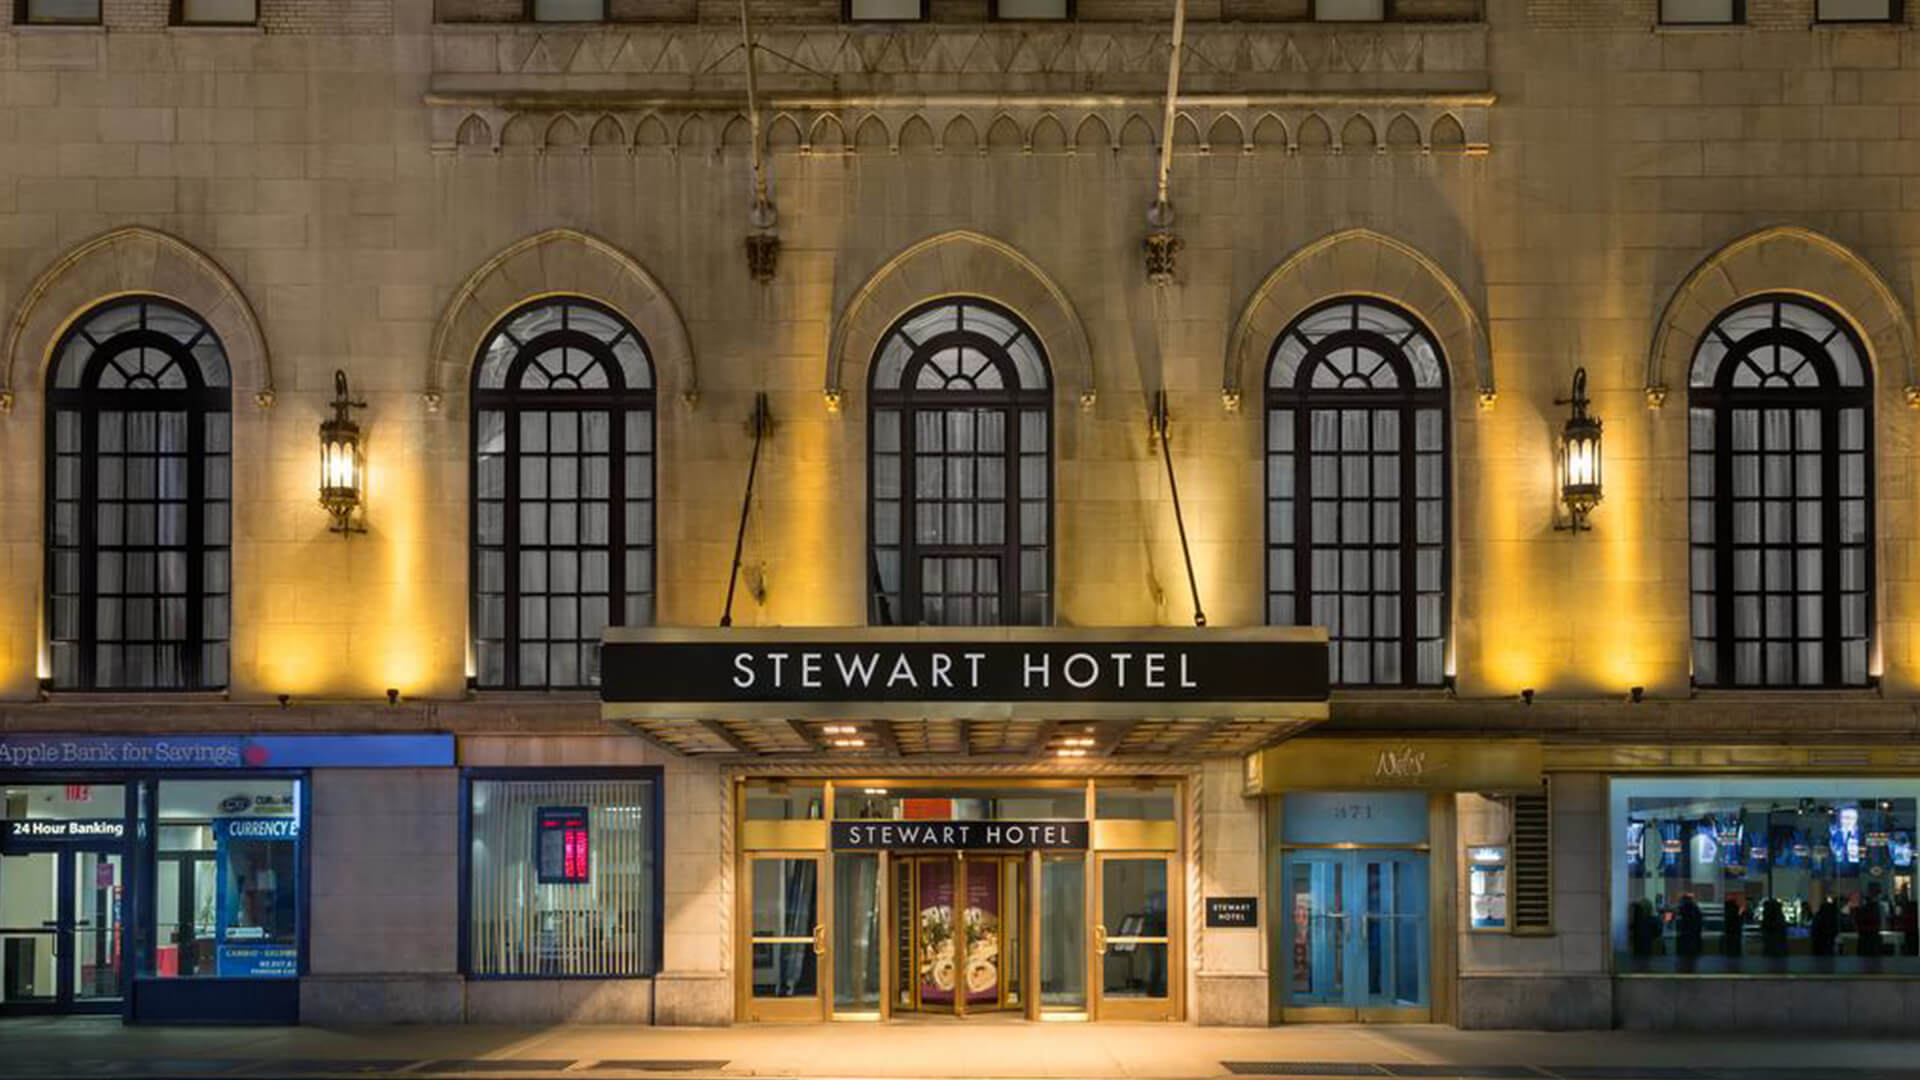 Entrée du Stewart Hotel illuminée par des lumières chaleureuses la nuit, mettant en valeur son architecture élégante et son atmosphère accueillante.